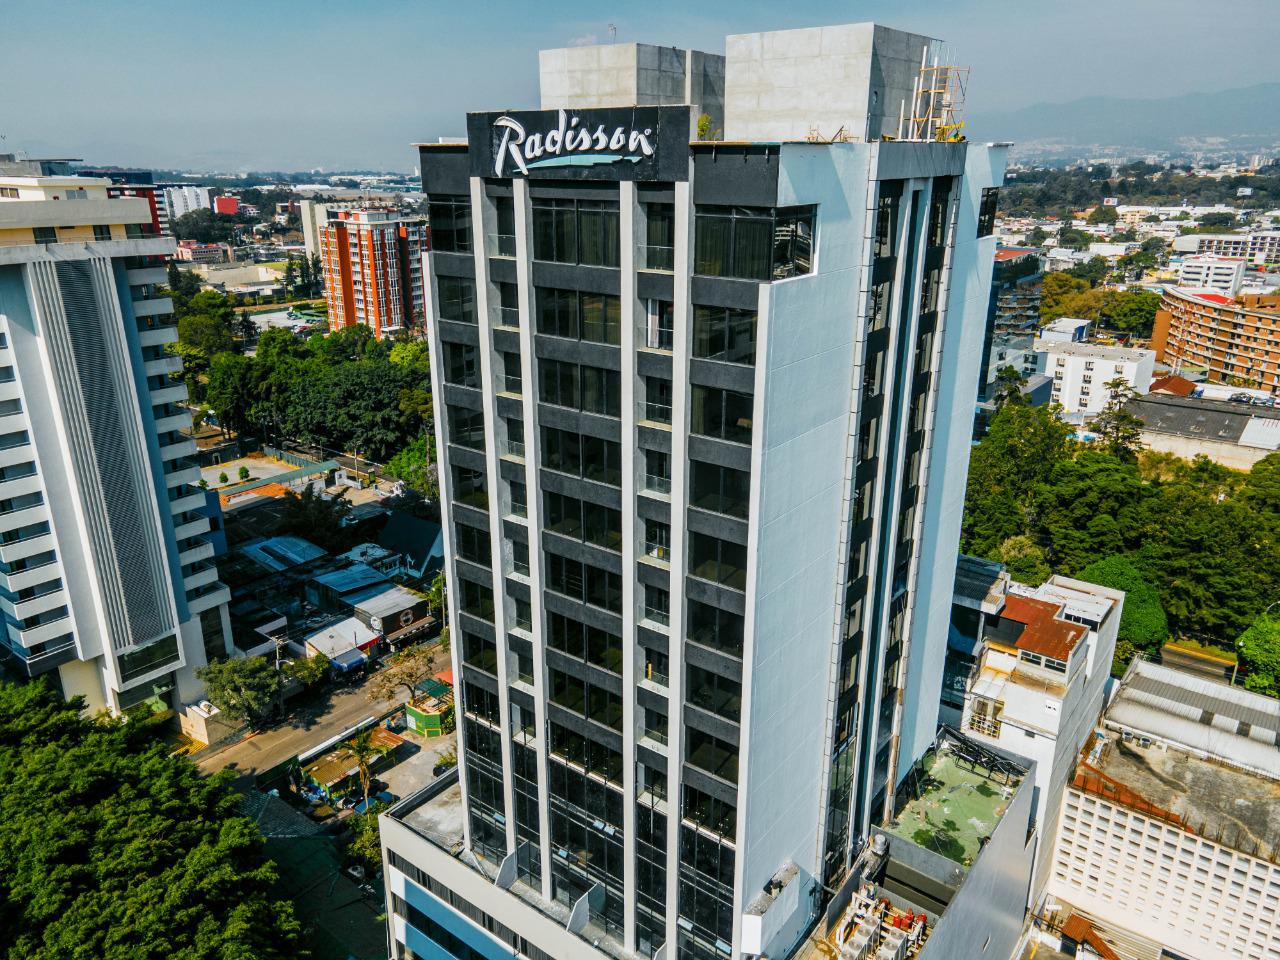 El hotel Radisson Hotel & Suites Guatemala renovó todas sus instalaciones para un mejor servicio para sus clientes. Foto Prensa Libre: Cortesía.